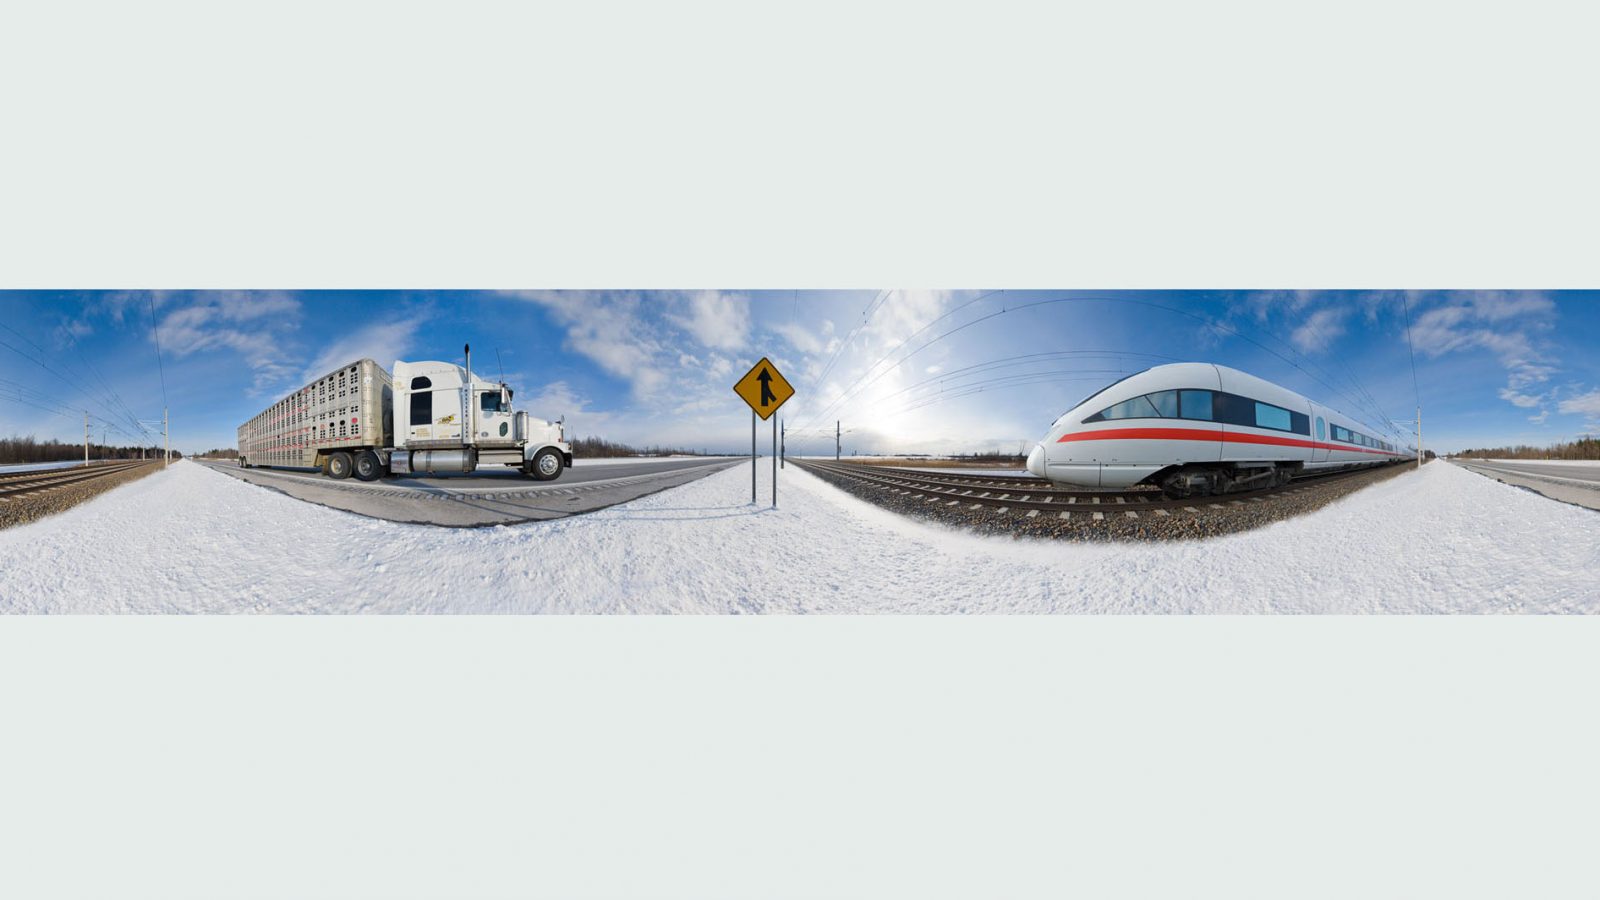 EXPOSE: Panorama Fotografie als differenzierende Bildsprache auch für Transport & Logistik.